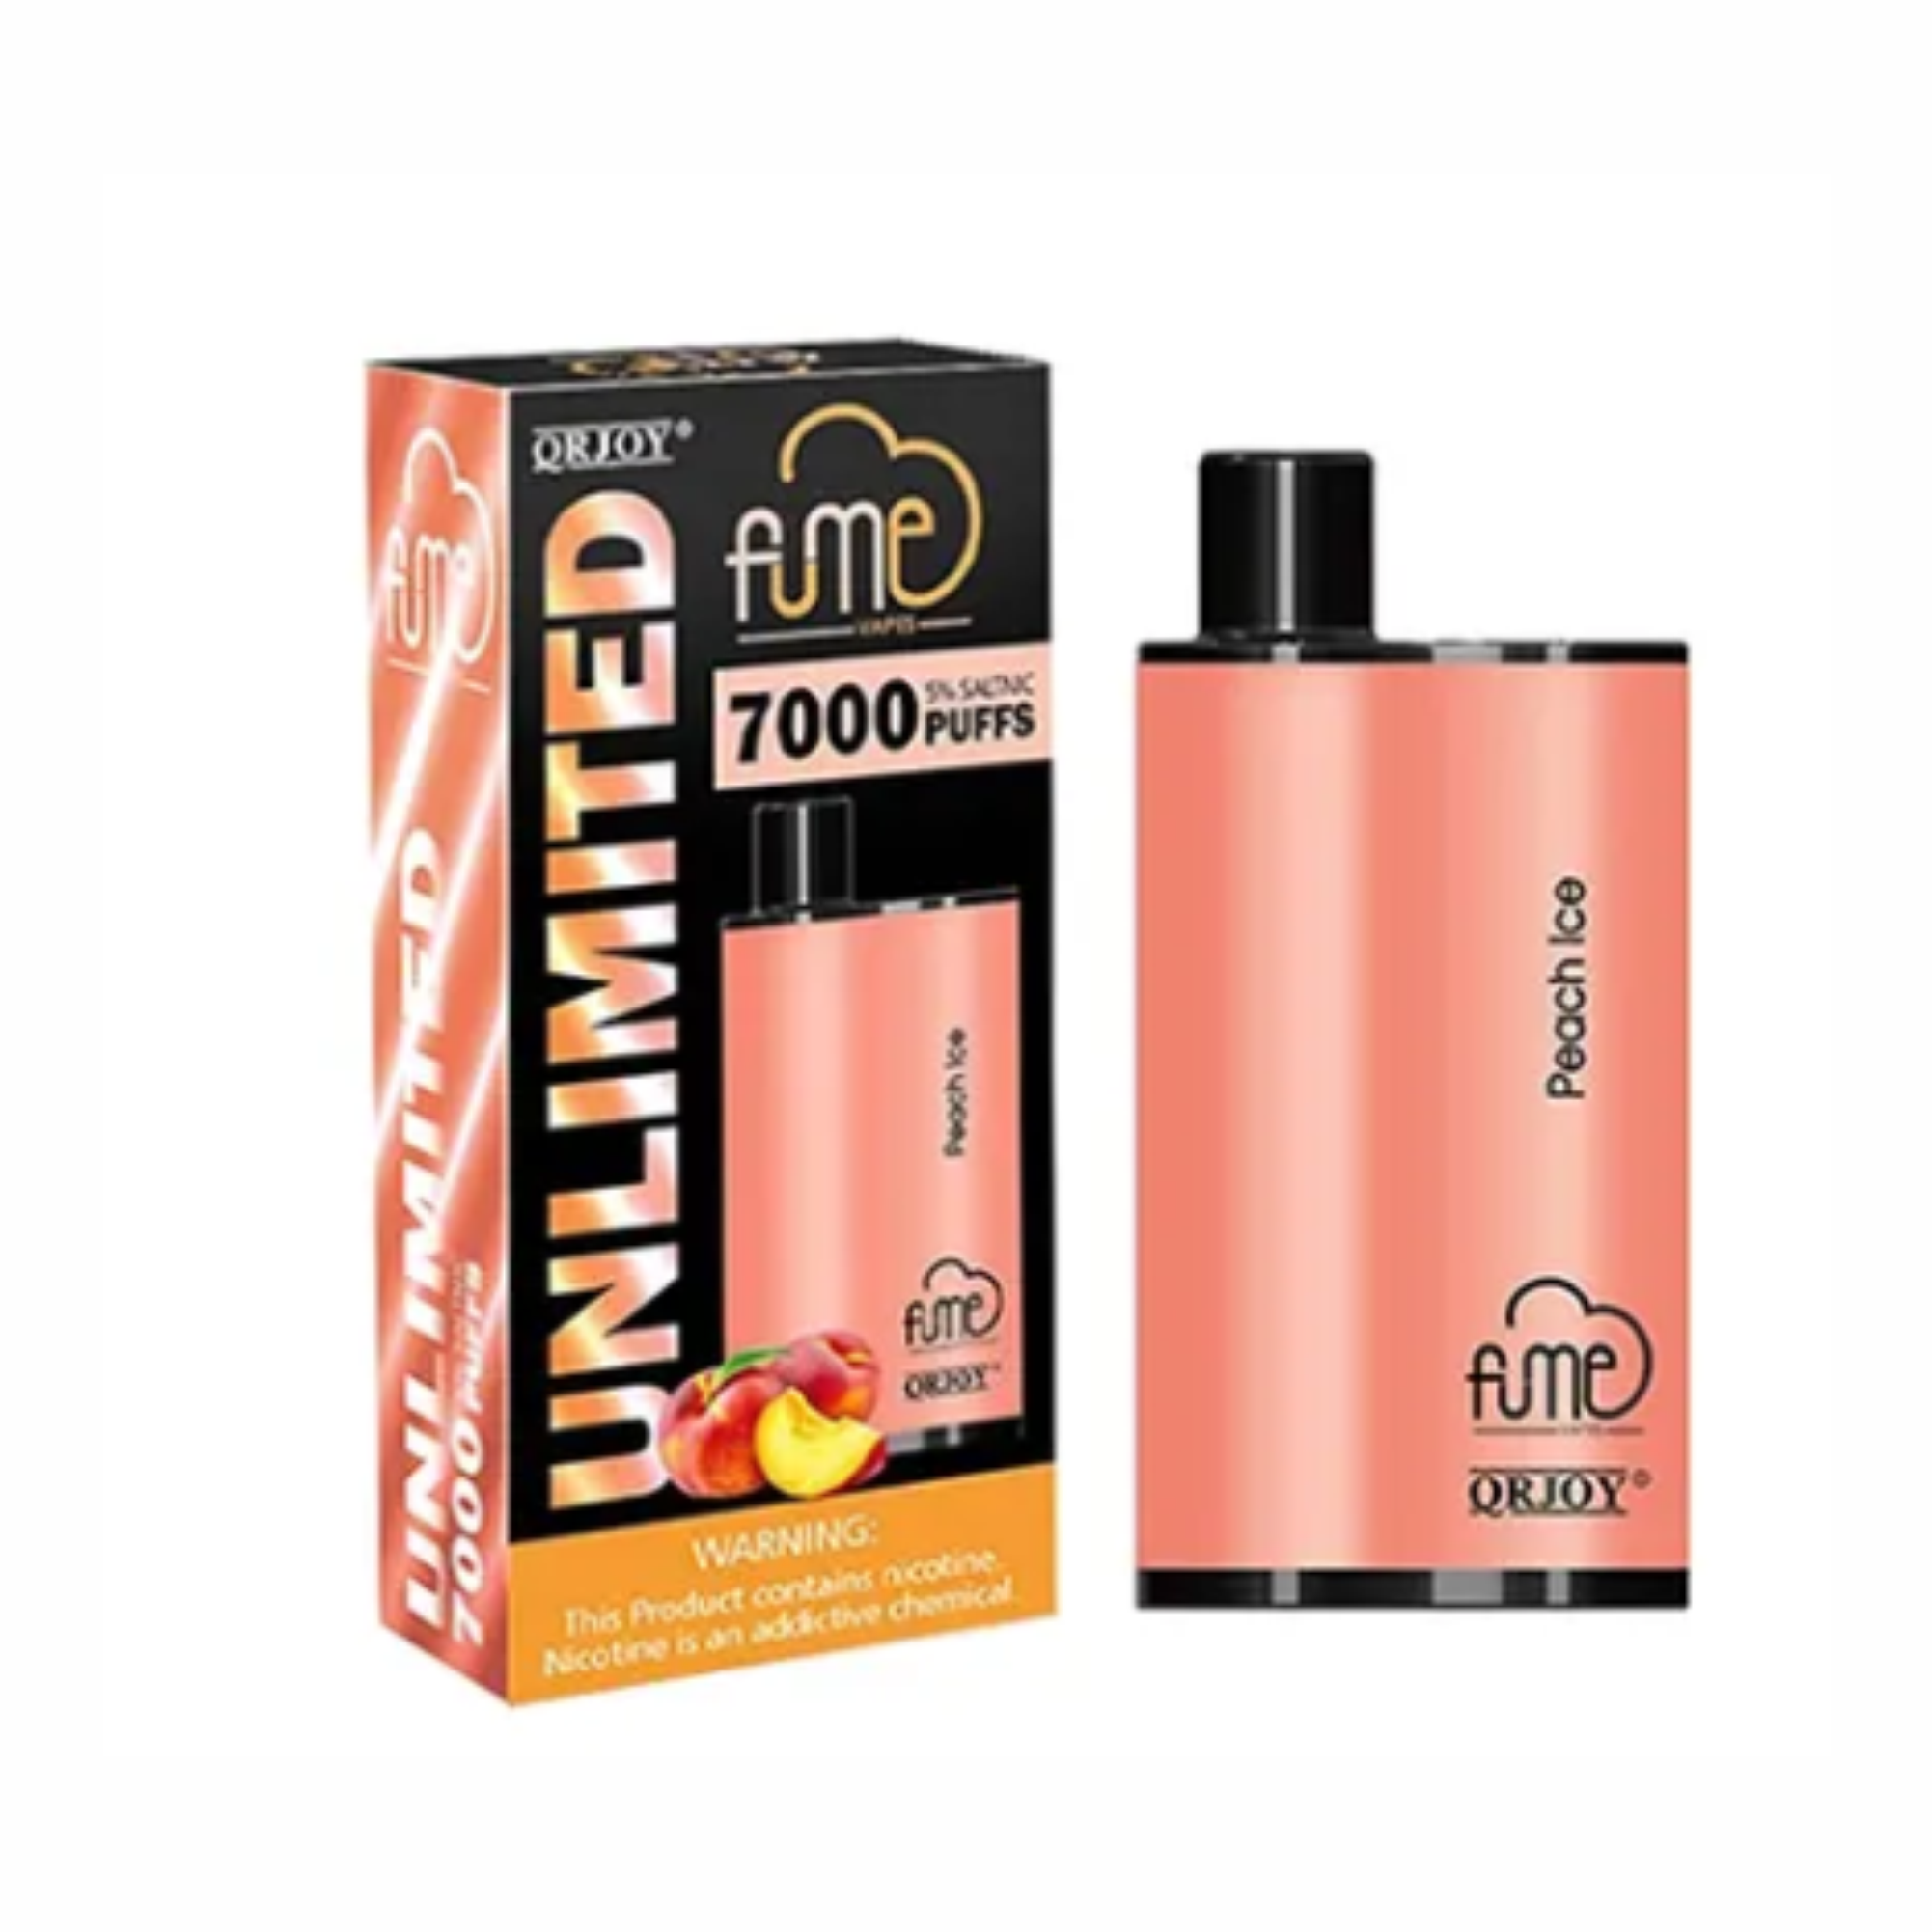 Fume Unlimited 7000 Puffs Disposable Vape Wholesale - 1 Box / 5pcs